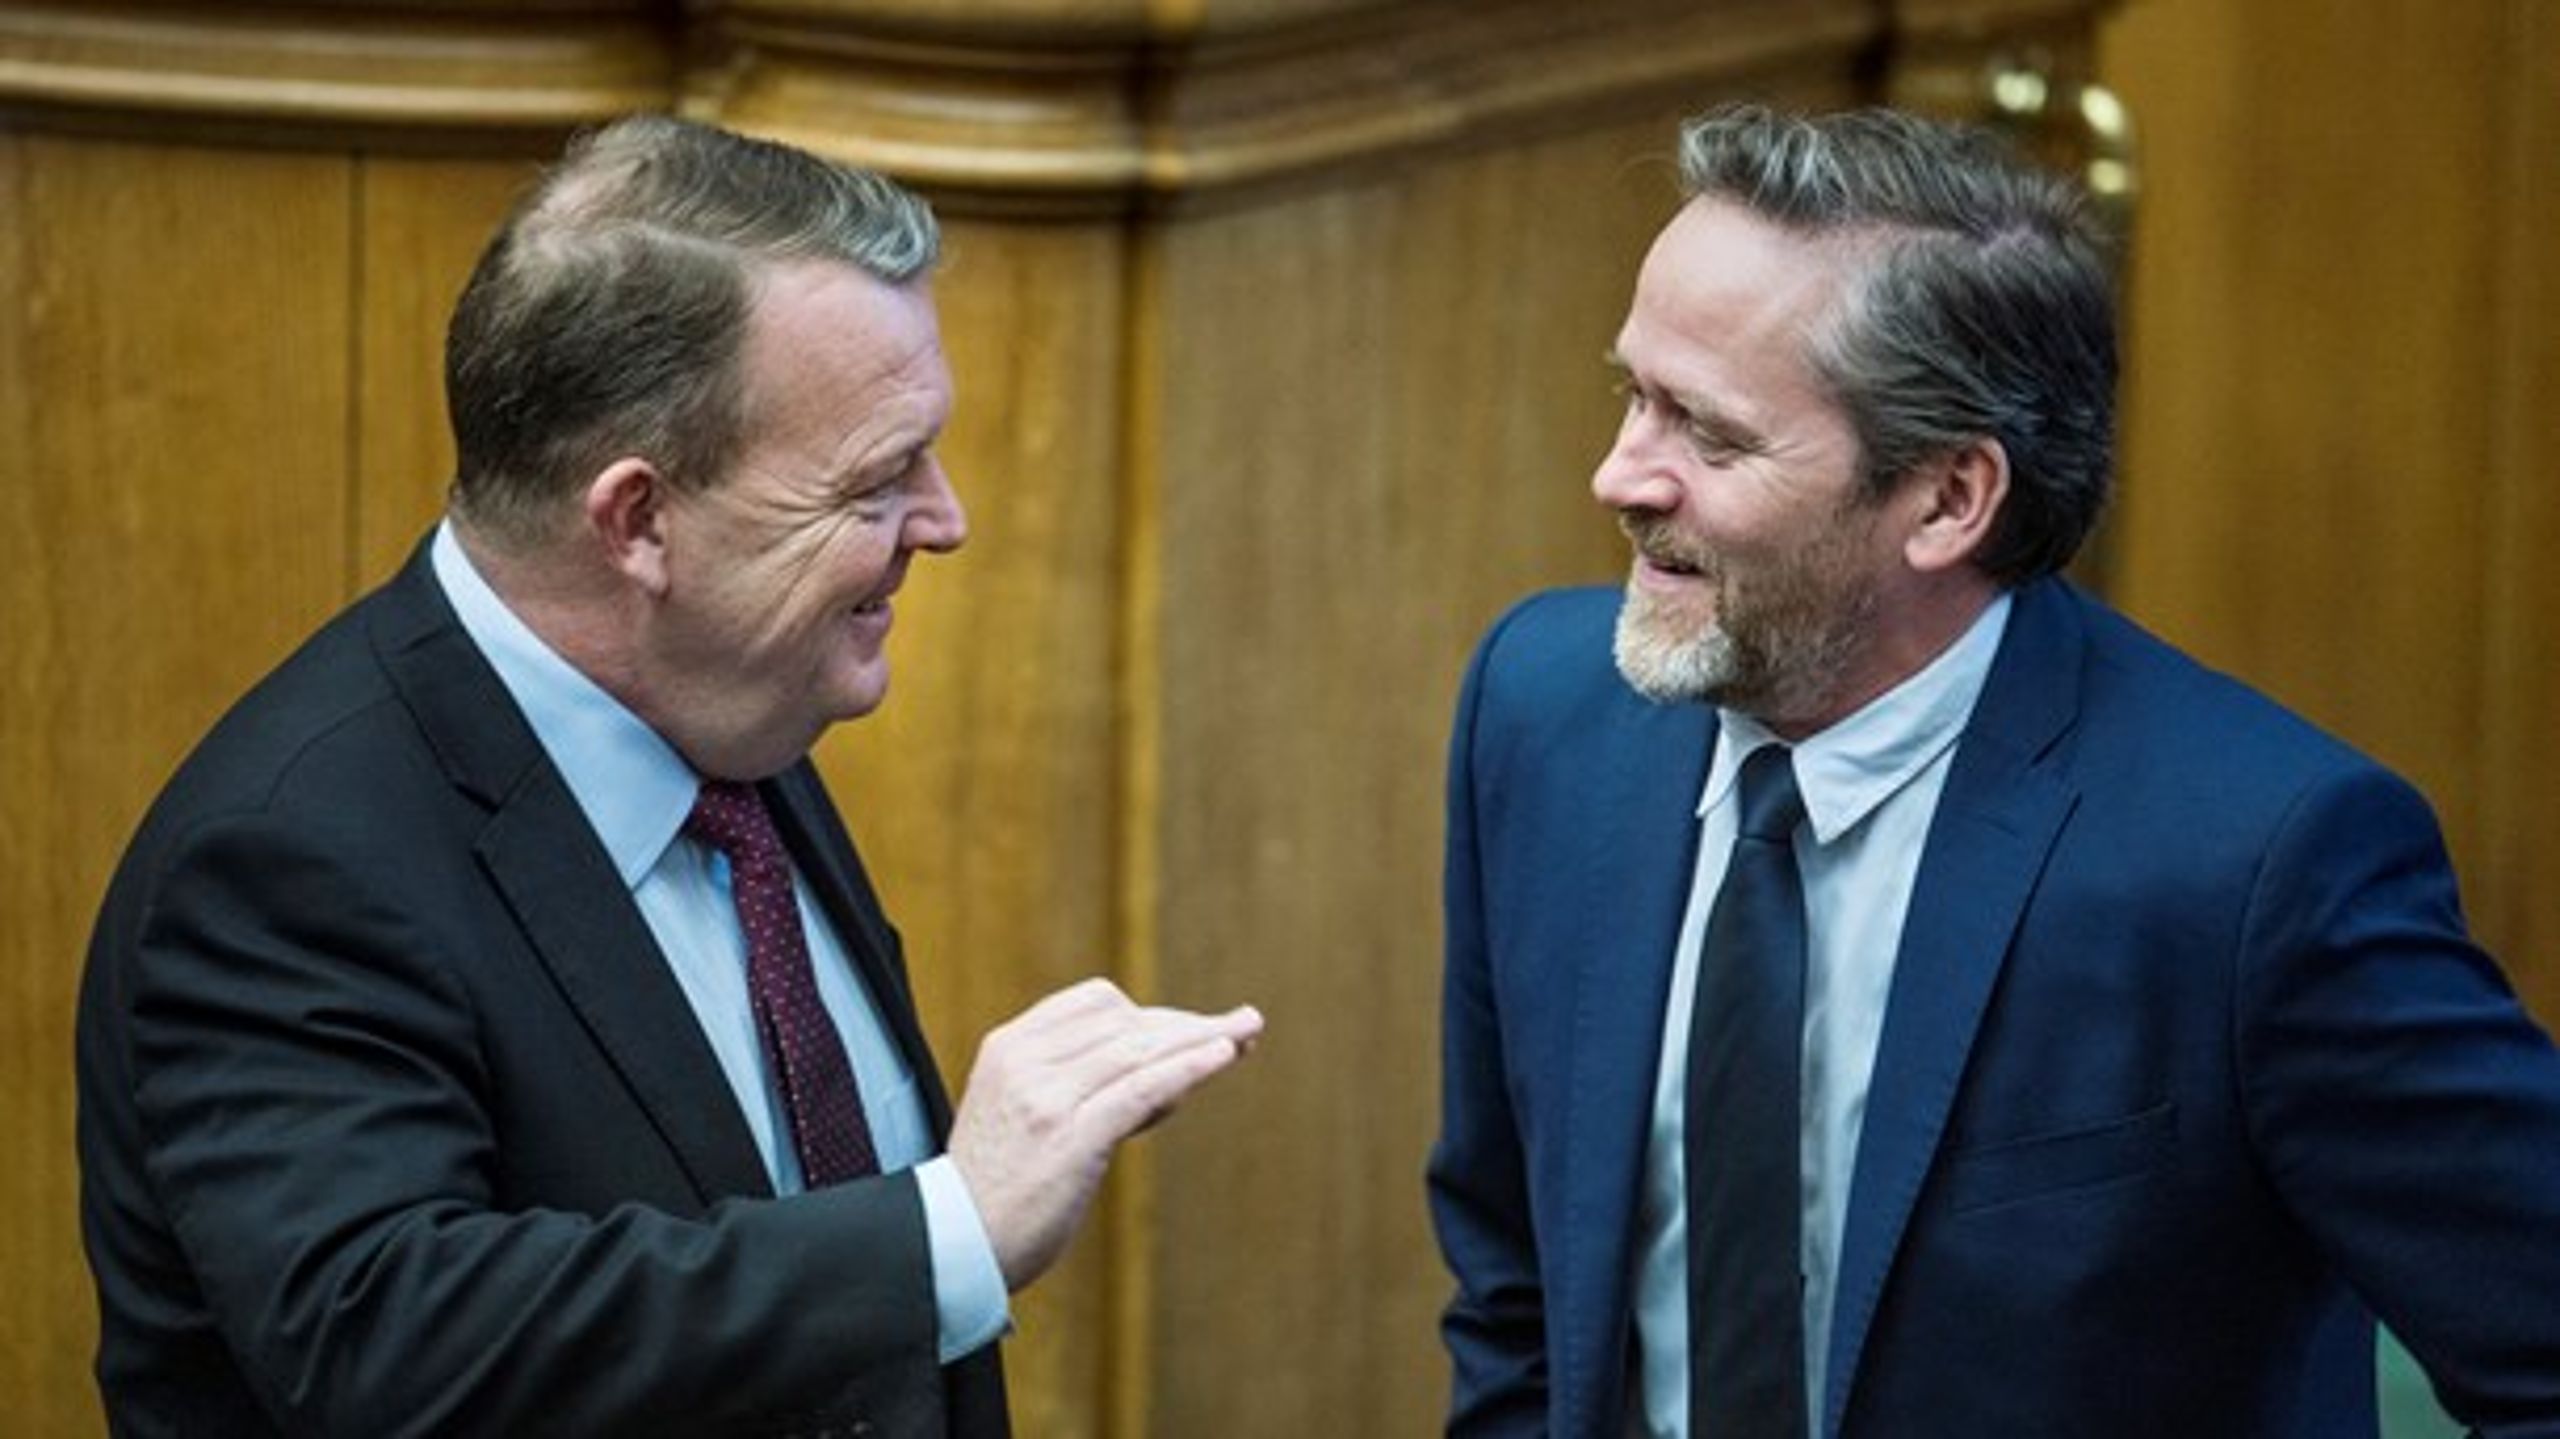 Lars Løkke Rasmussens bror har meldt sig ind i Liberal Alliance. Allerede i 2015 forlod han Venstre.